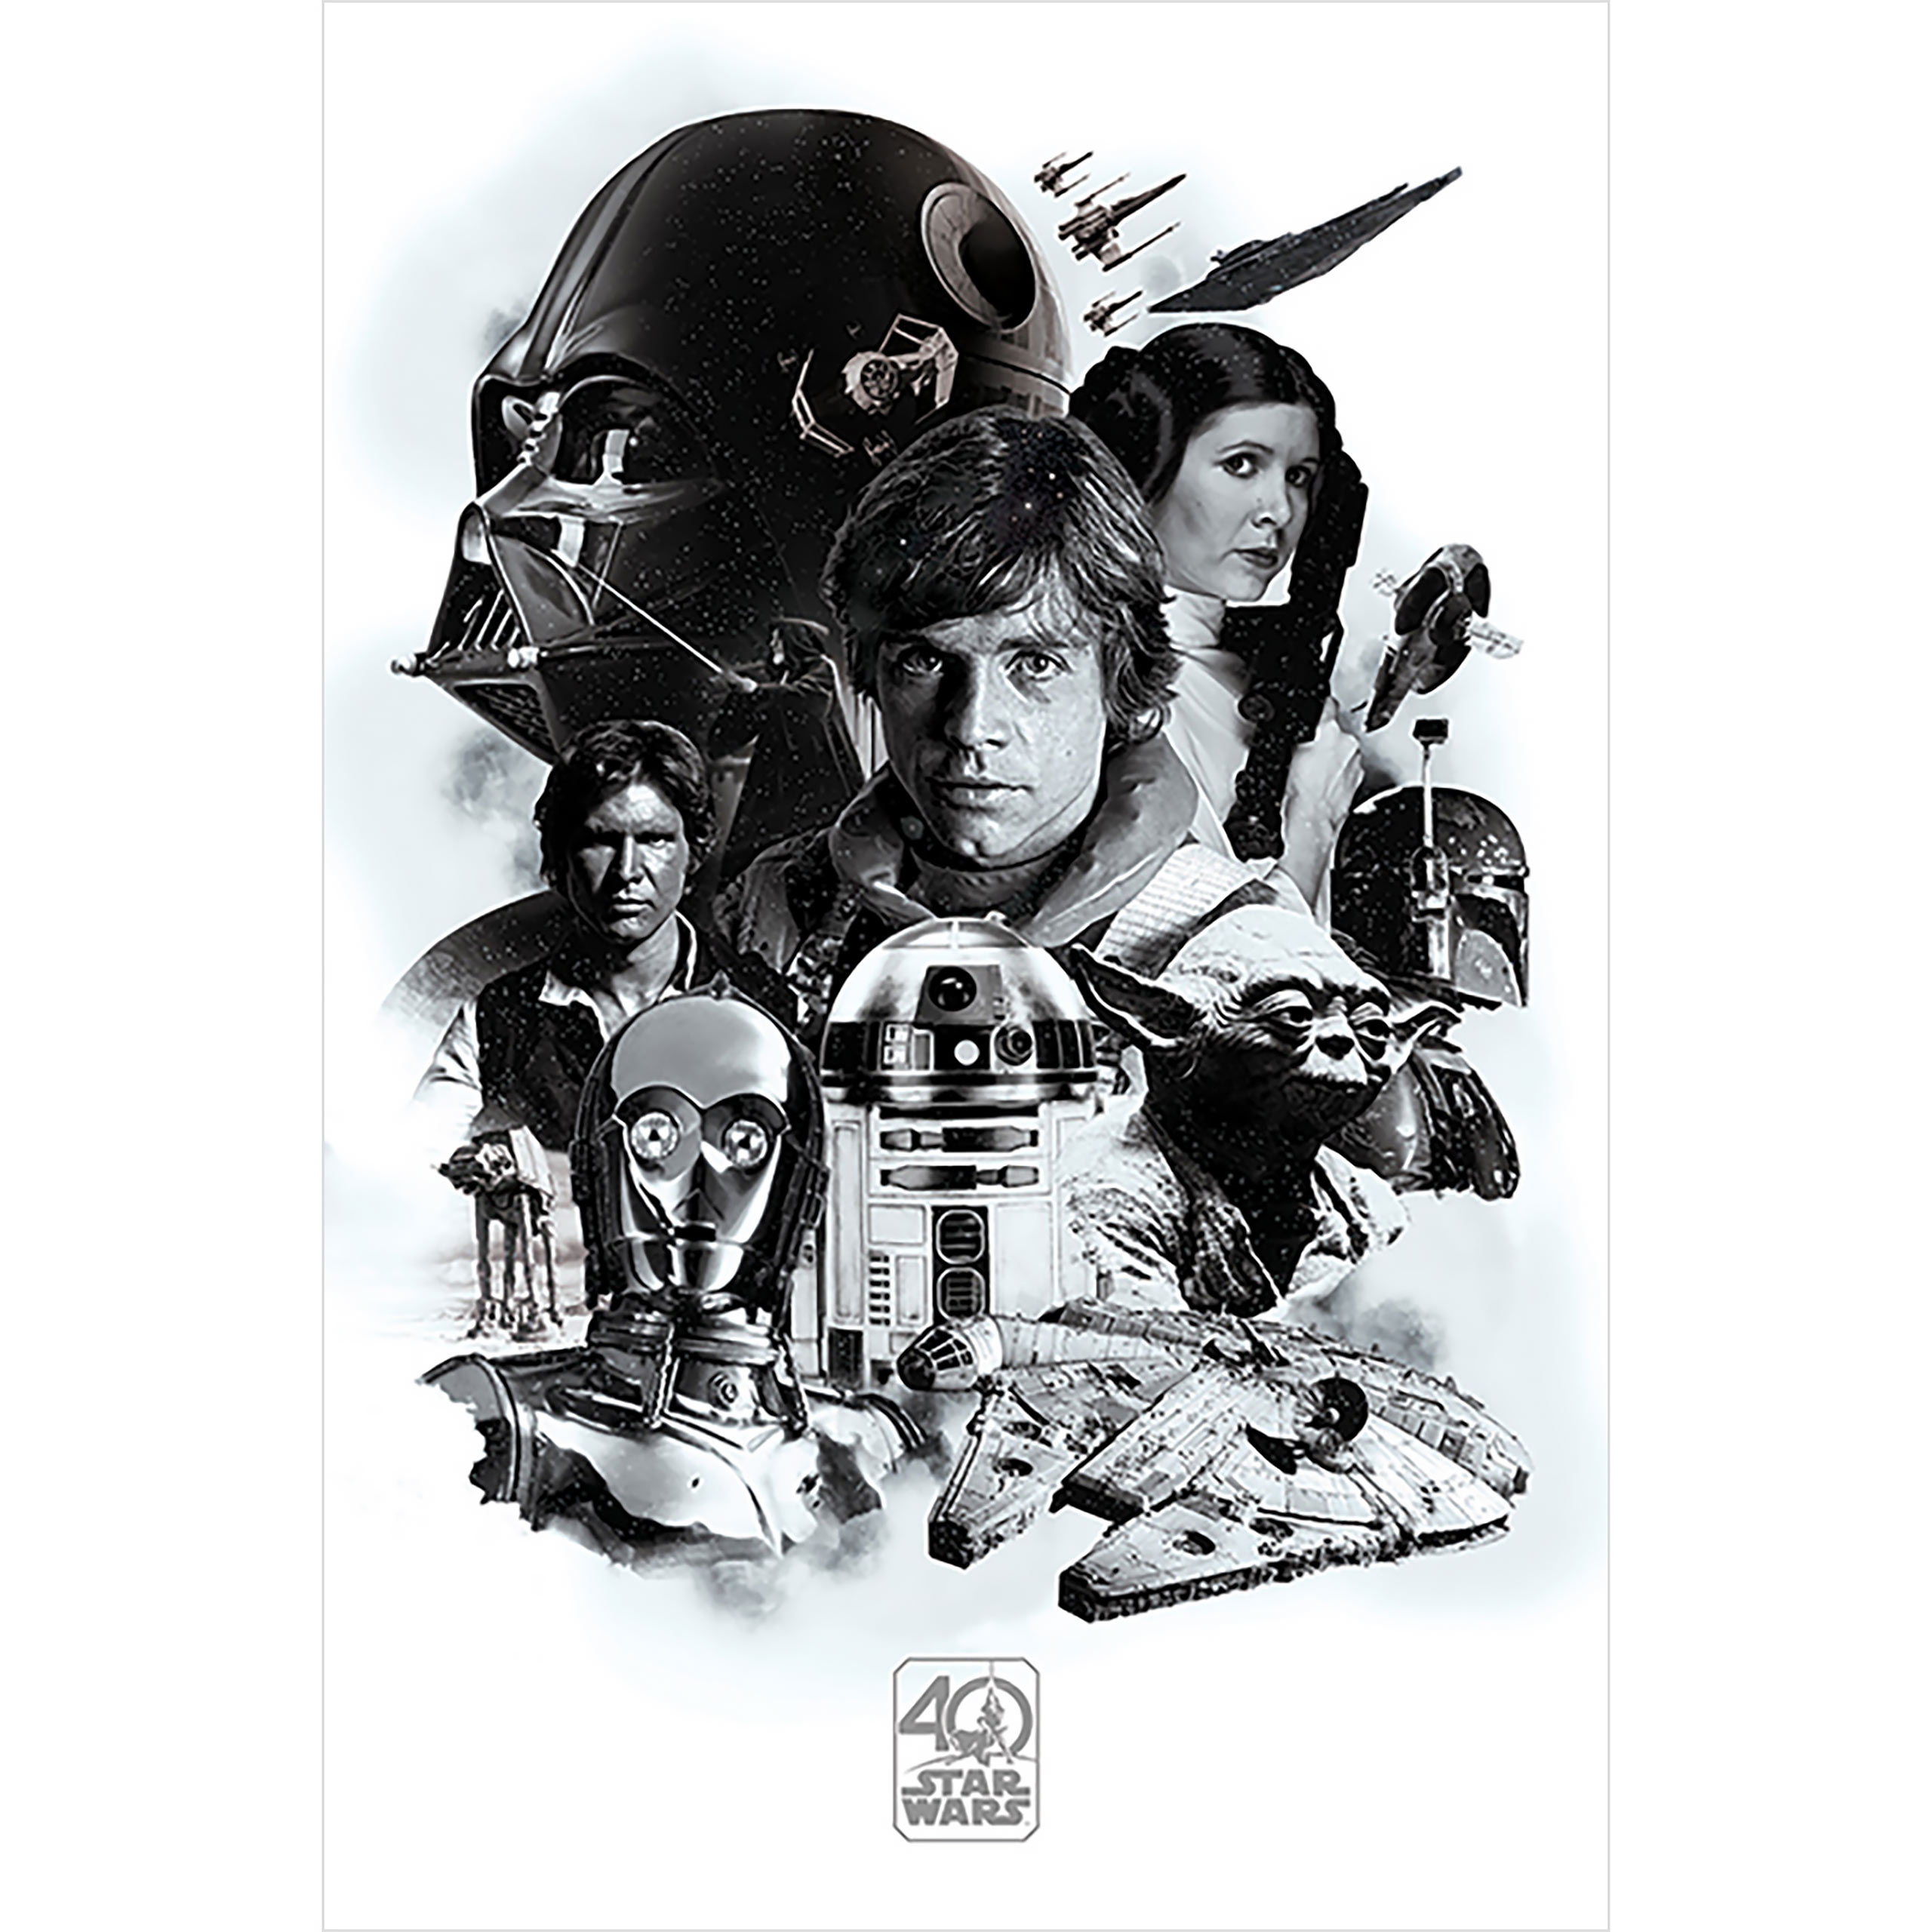 Star Wars - 40ste Verjaardag Montage Maxi Poster